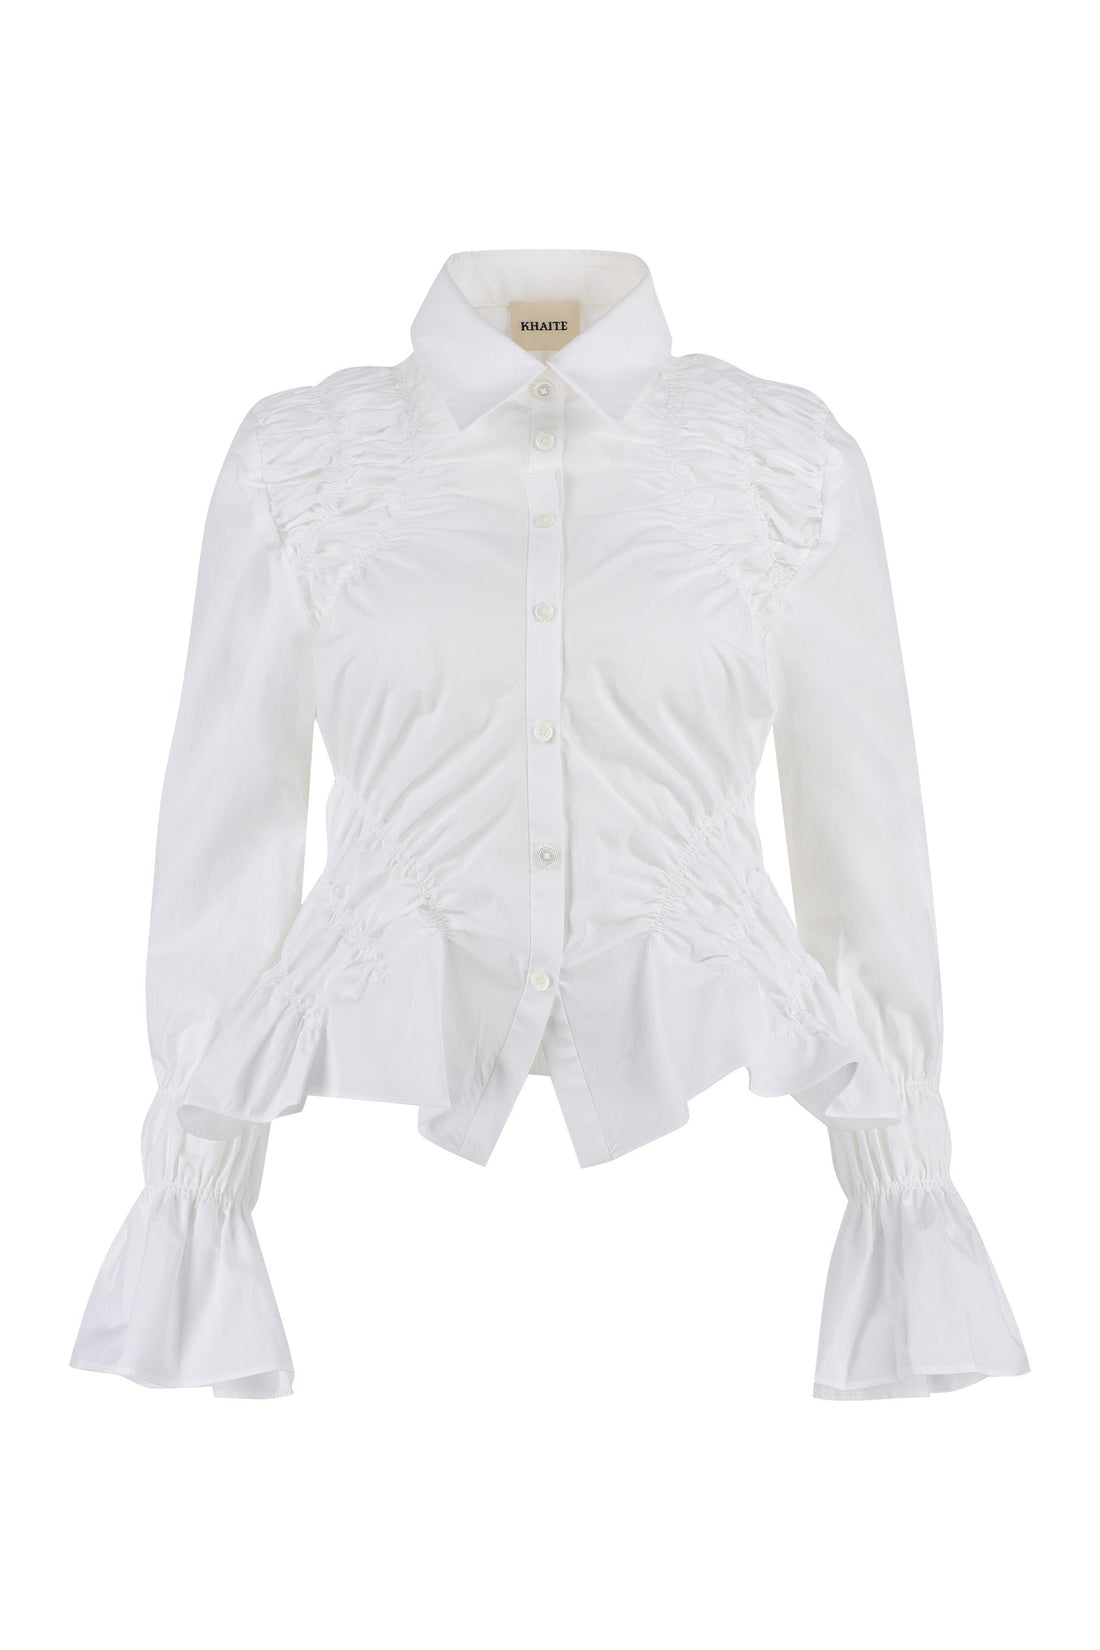 Khaite-OUTLET-SALE-Cotton poplin shirt-ARCHIVIST